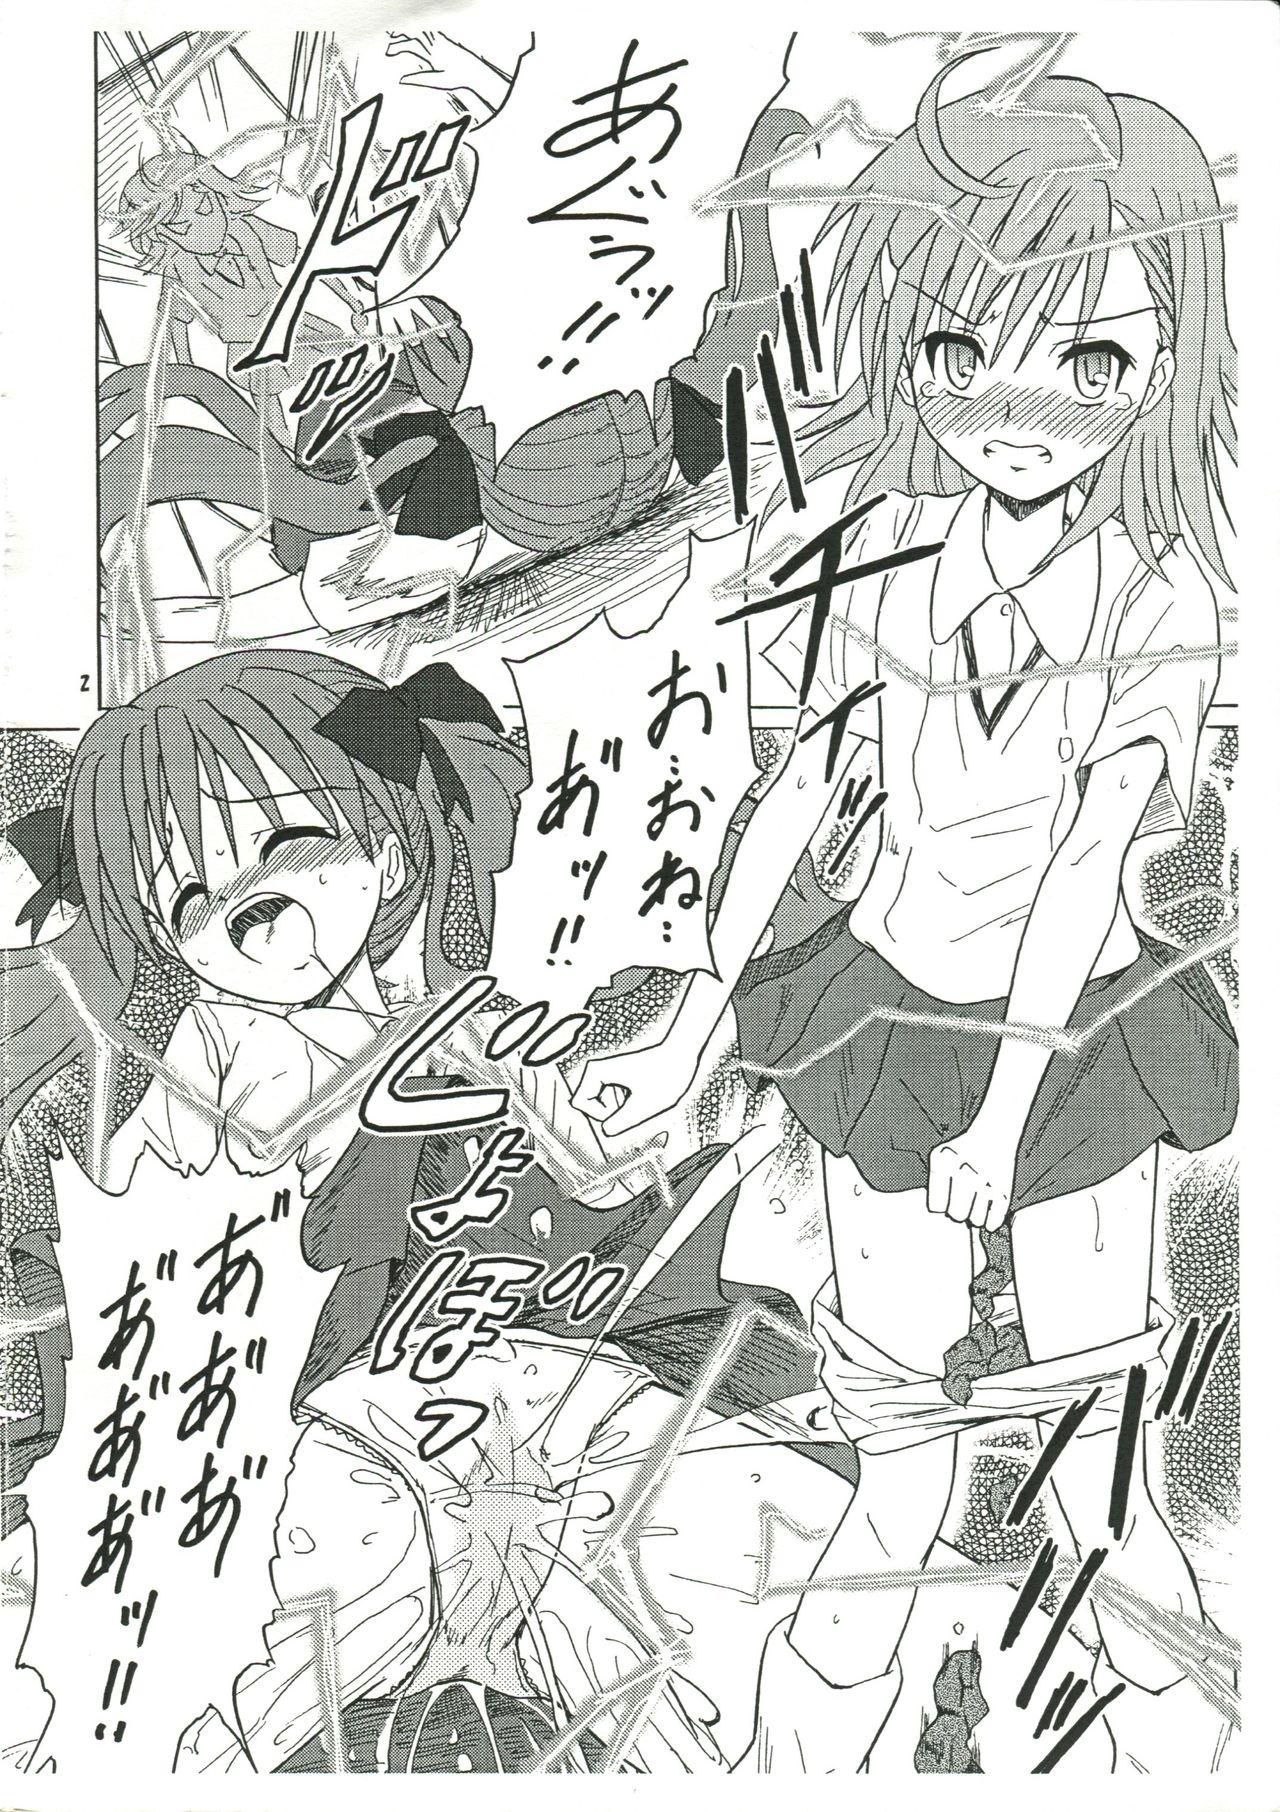 Collar Chirashi no Ura Vol. 3 - Toaru kagaku no railgun Toaru majutsu no index Bangbros - Page 3